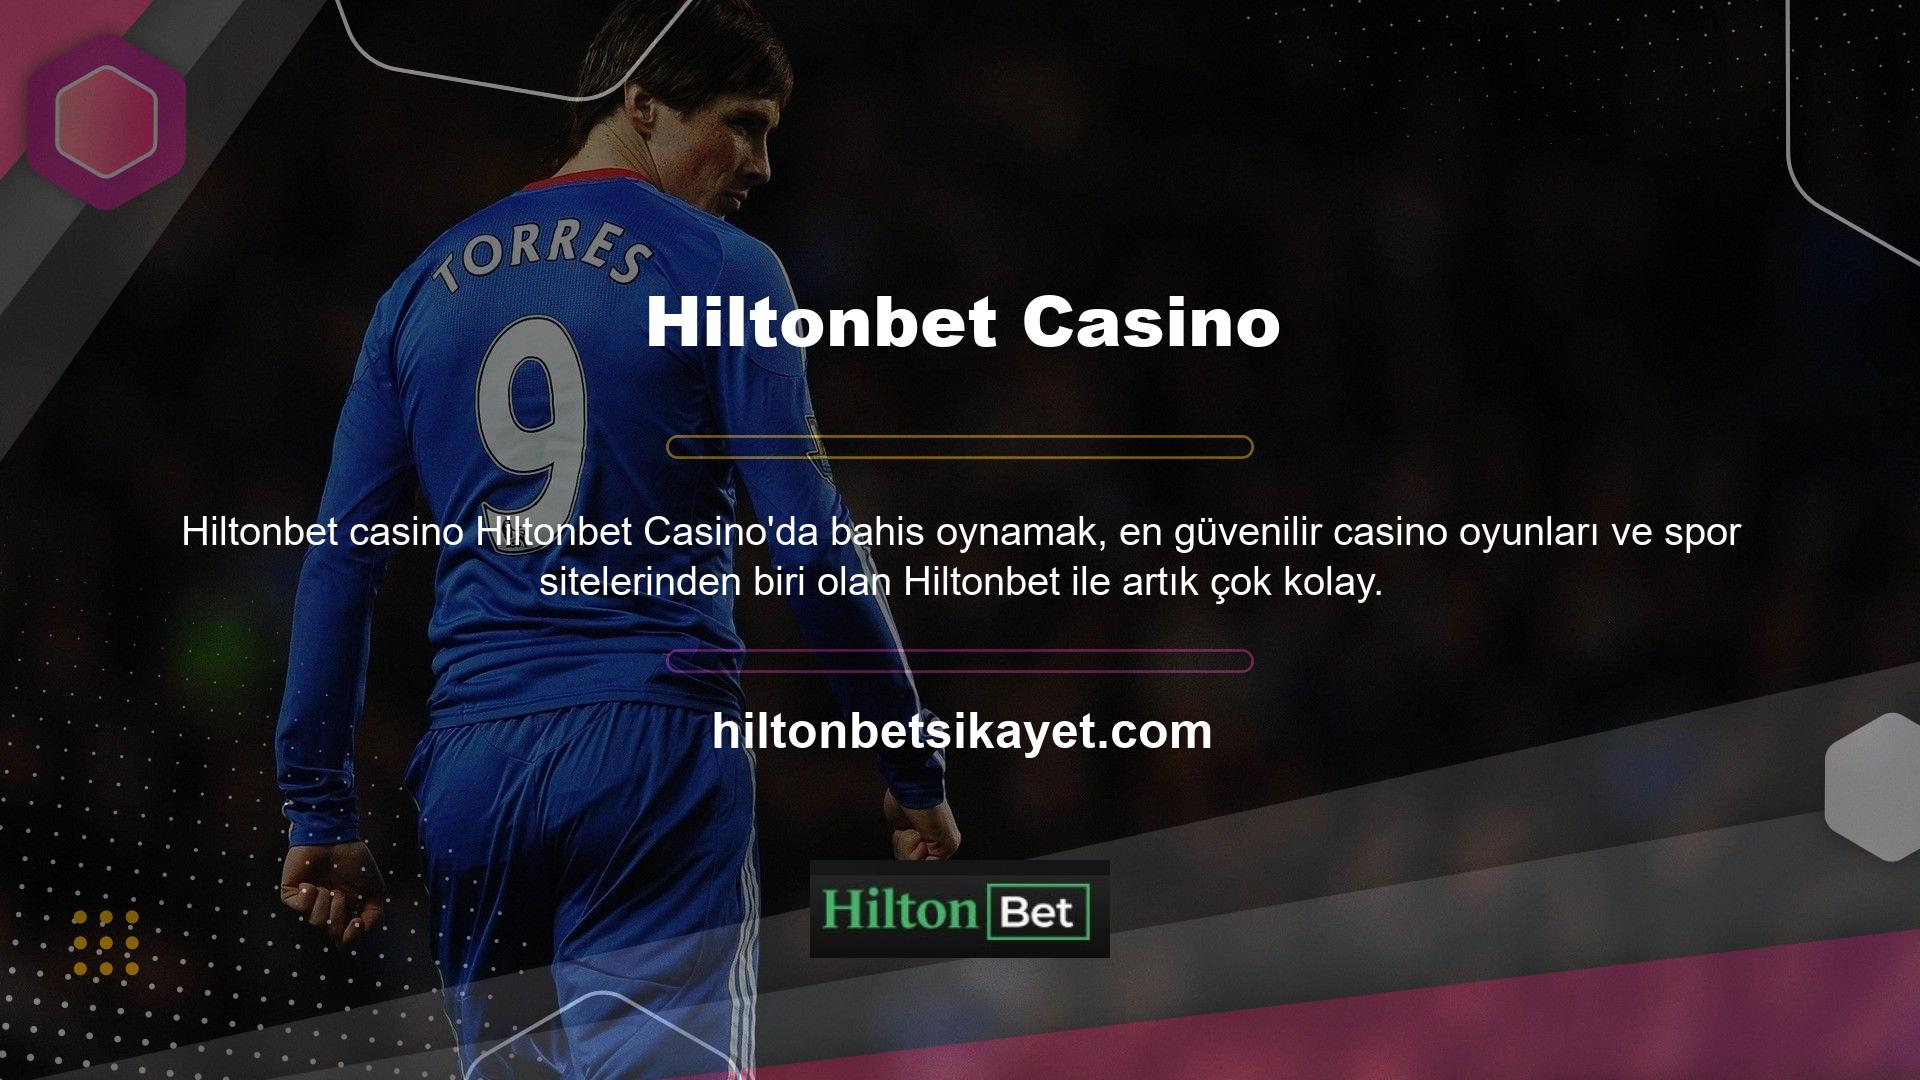 Hiltonbet web sitesine kaydolun ve her para yatırma işleminde büyük bonuslar kazanın